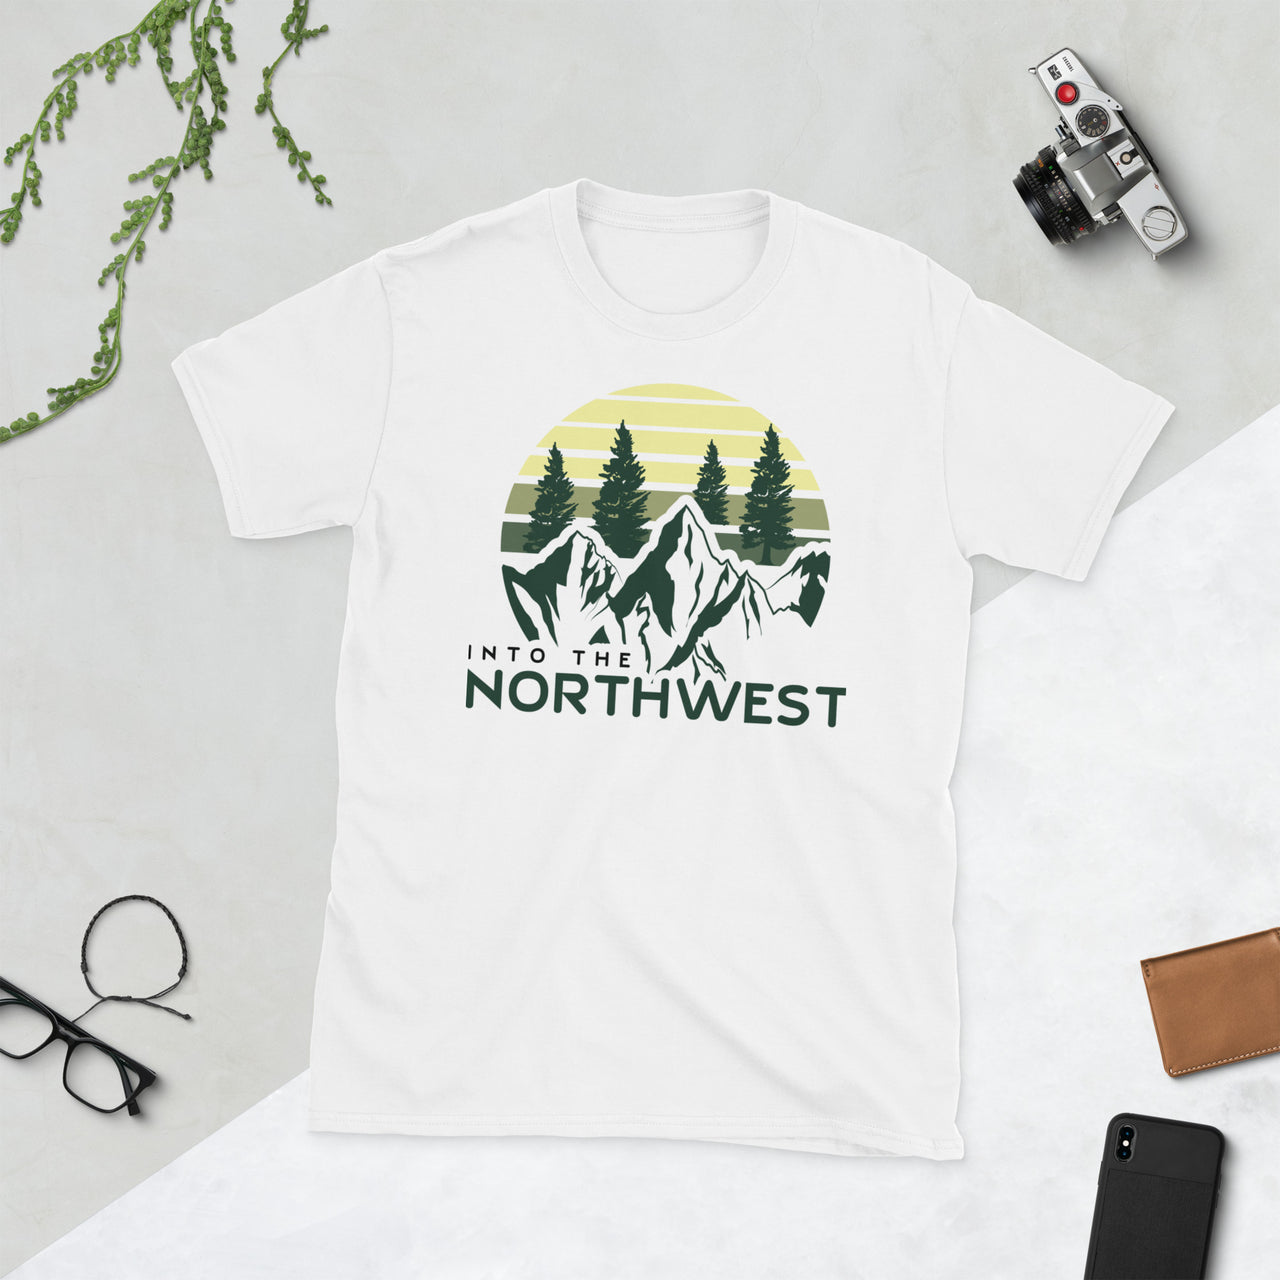 Into the Northwest - Unisex T-Shirt